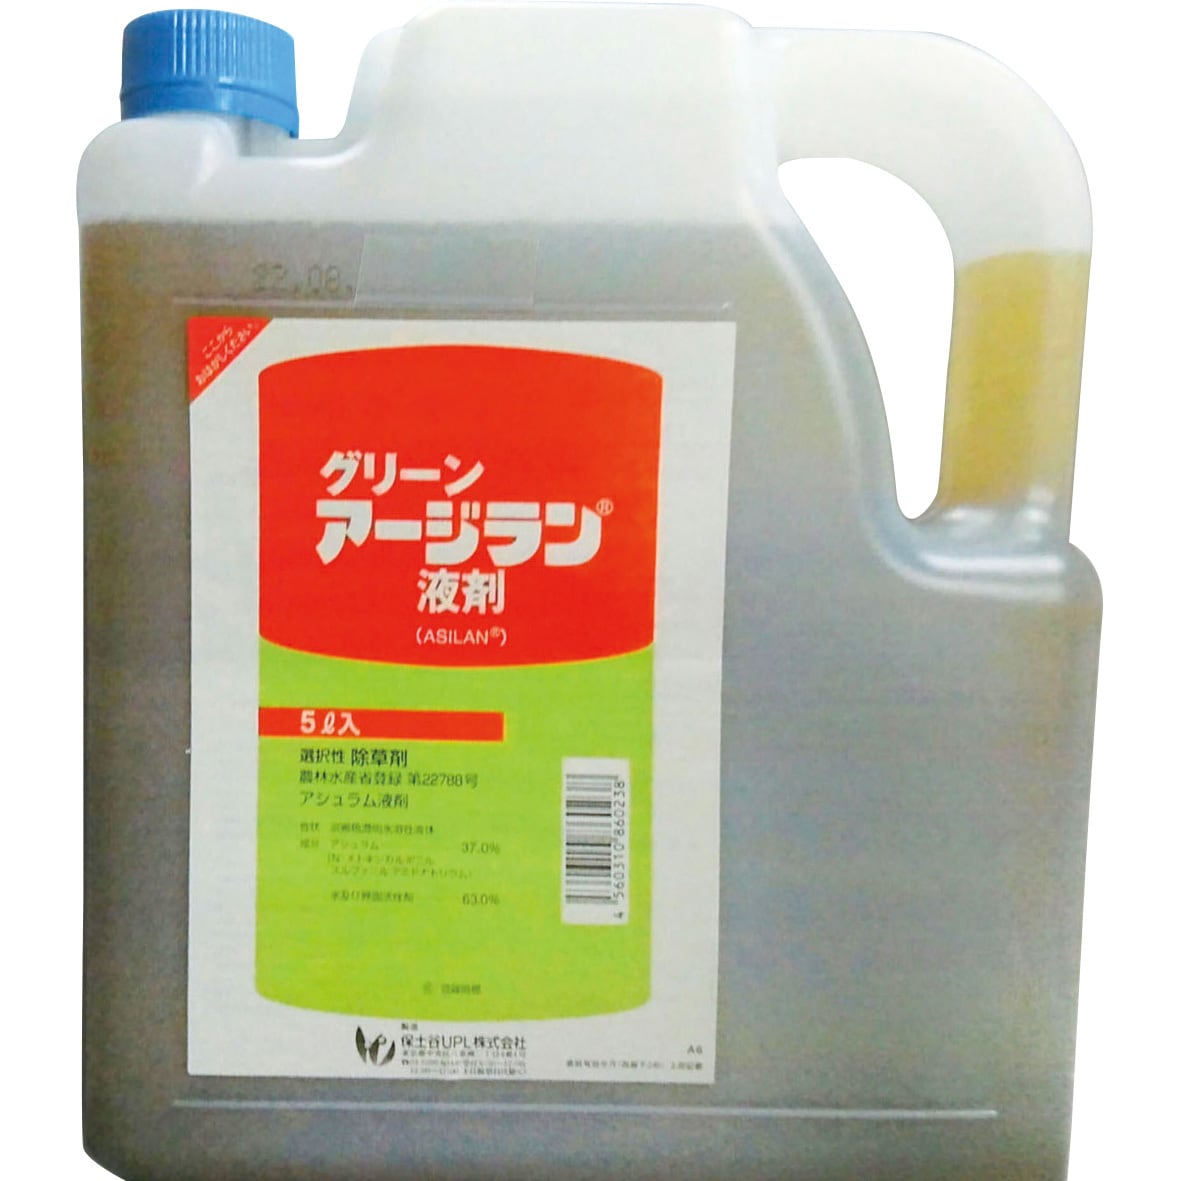 グリーンアージラン液剤 1本(5L) 石原バイオサイエンス 【通販サイトMonotaRO】